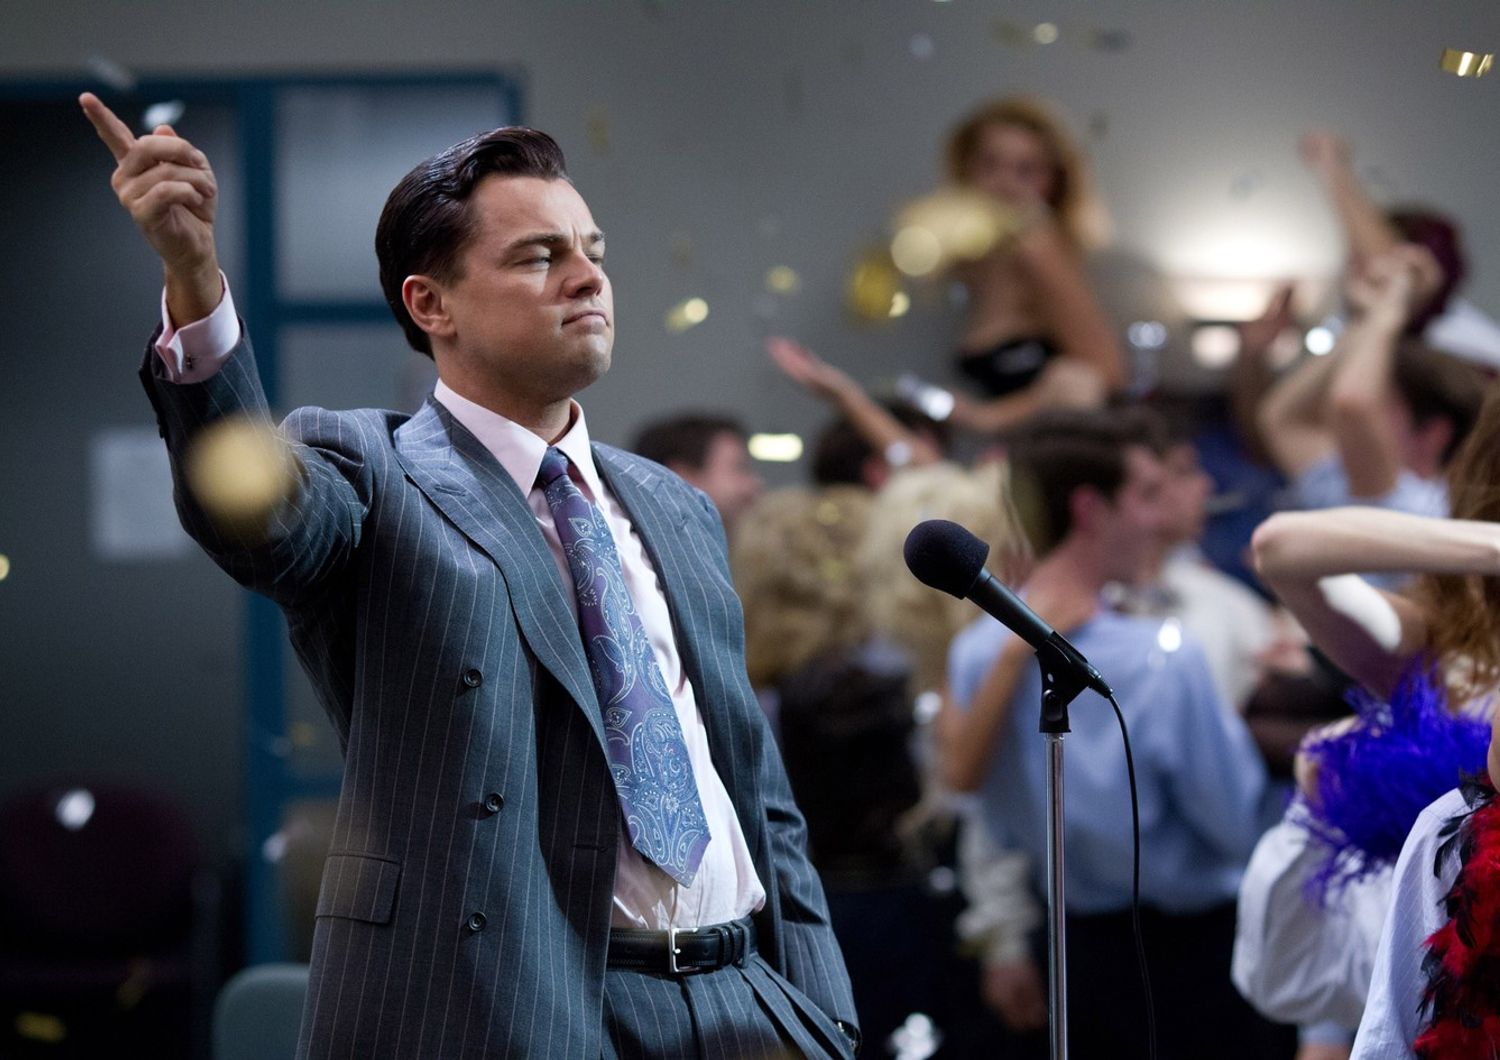 &nbsp;Una scena del film The Wolf of Wall Street, interpretato da Leonardo di Caprio